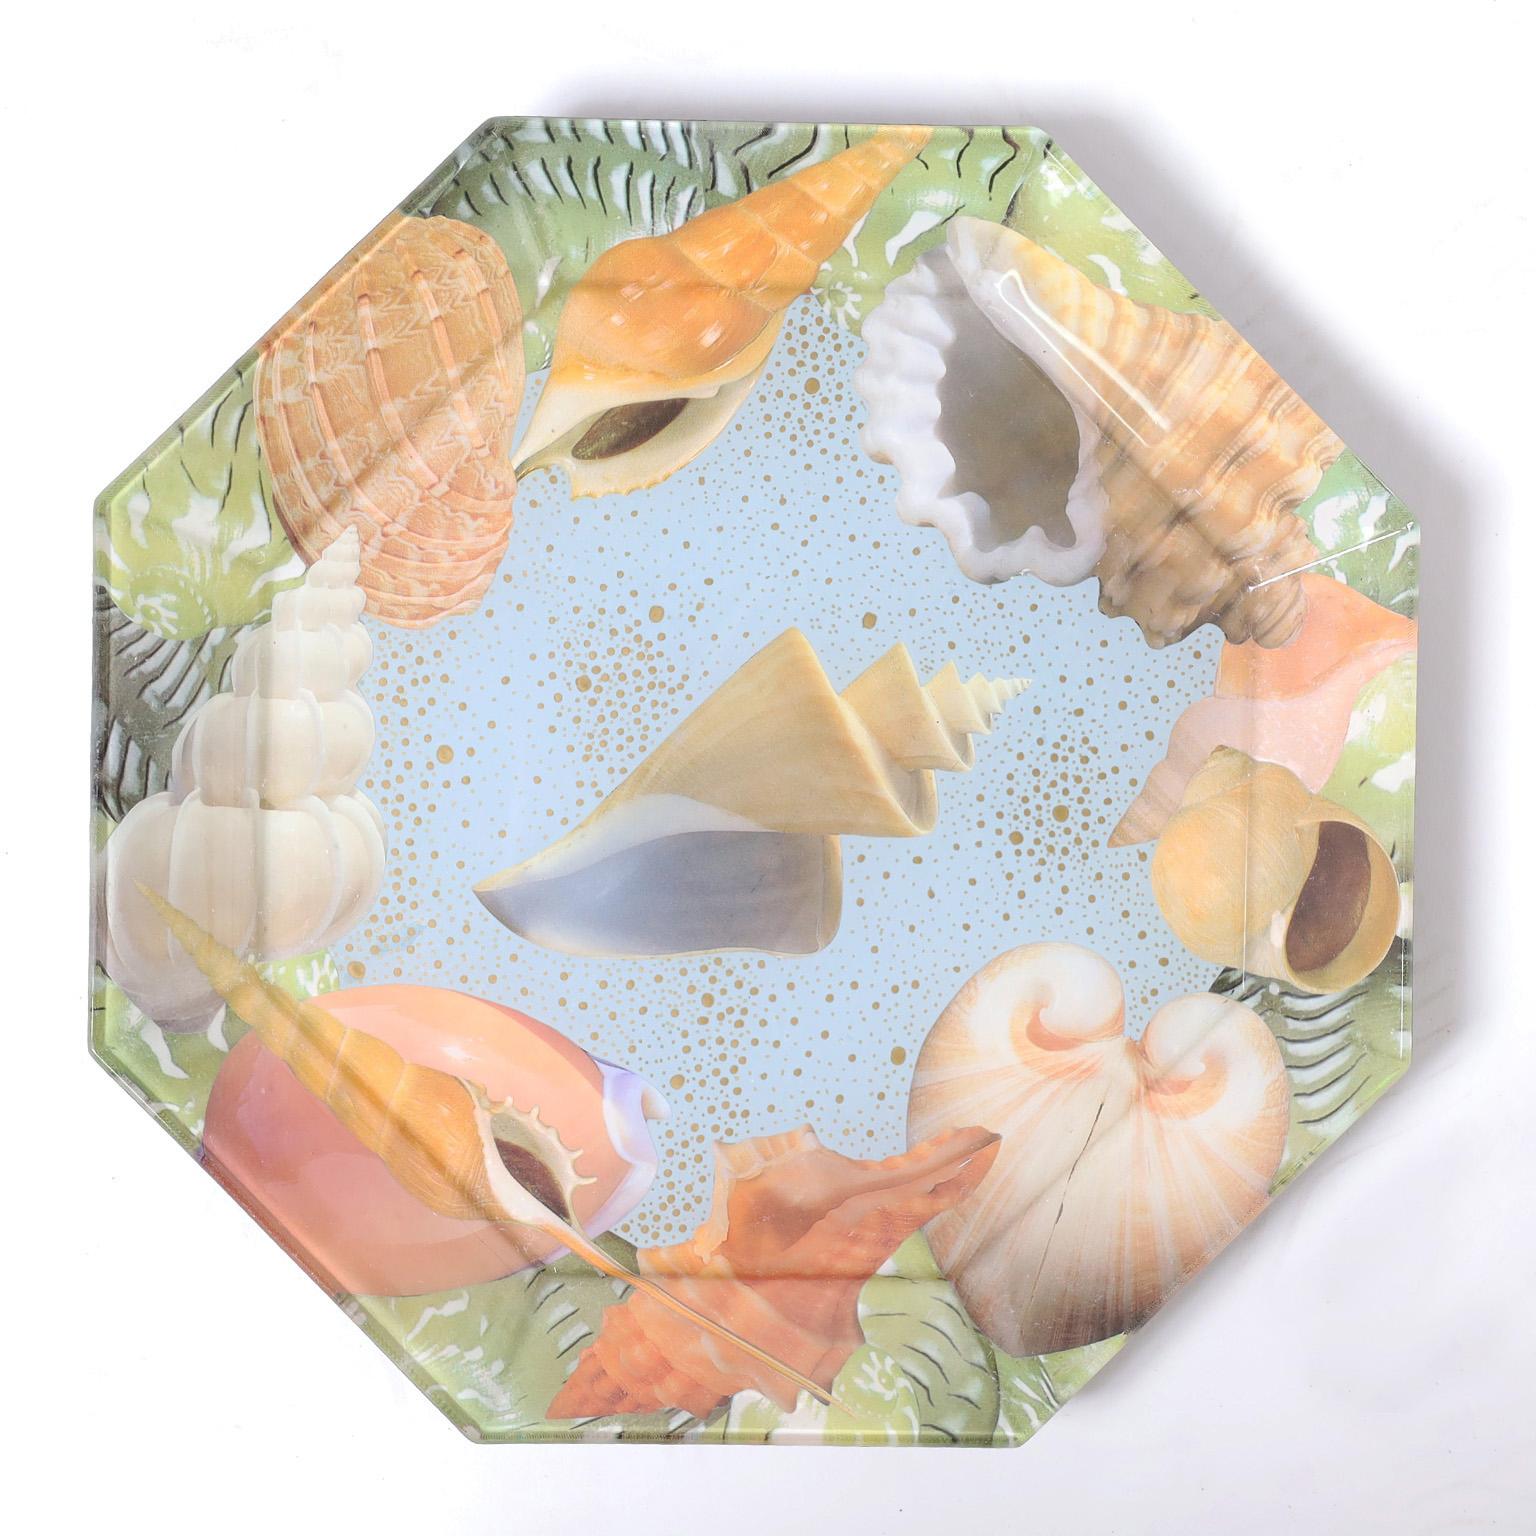 Ensemble de dix assiettes en verre de forme octogonale décorées de coquillages selon une technique fantaisiste de découpage inversé.